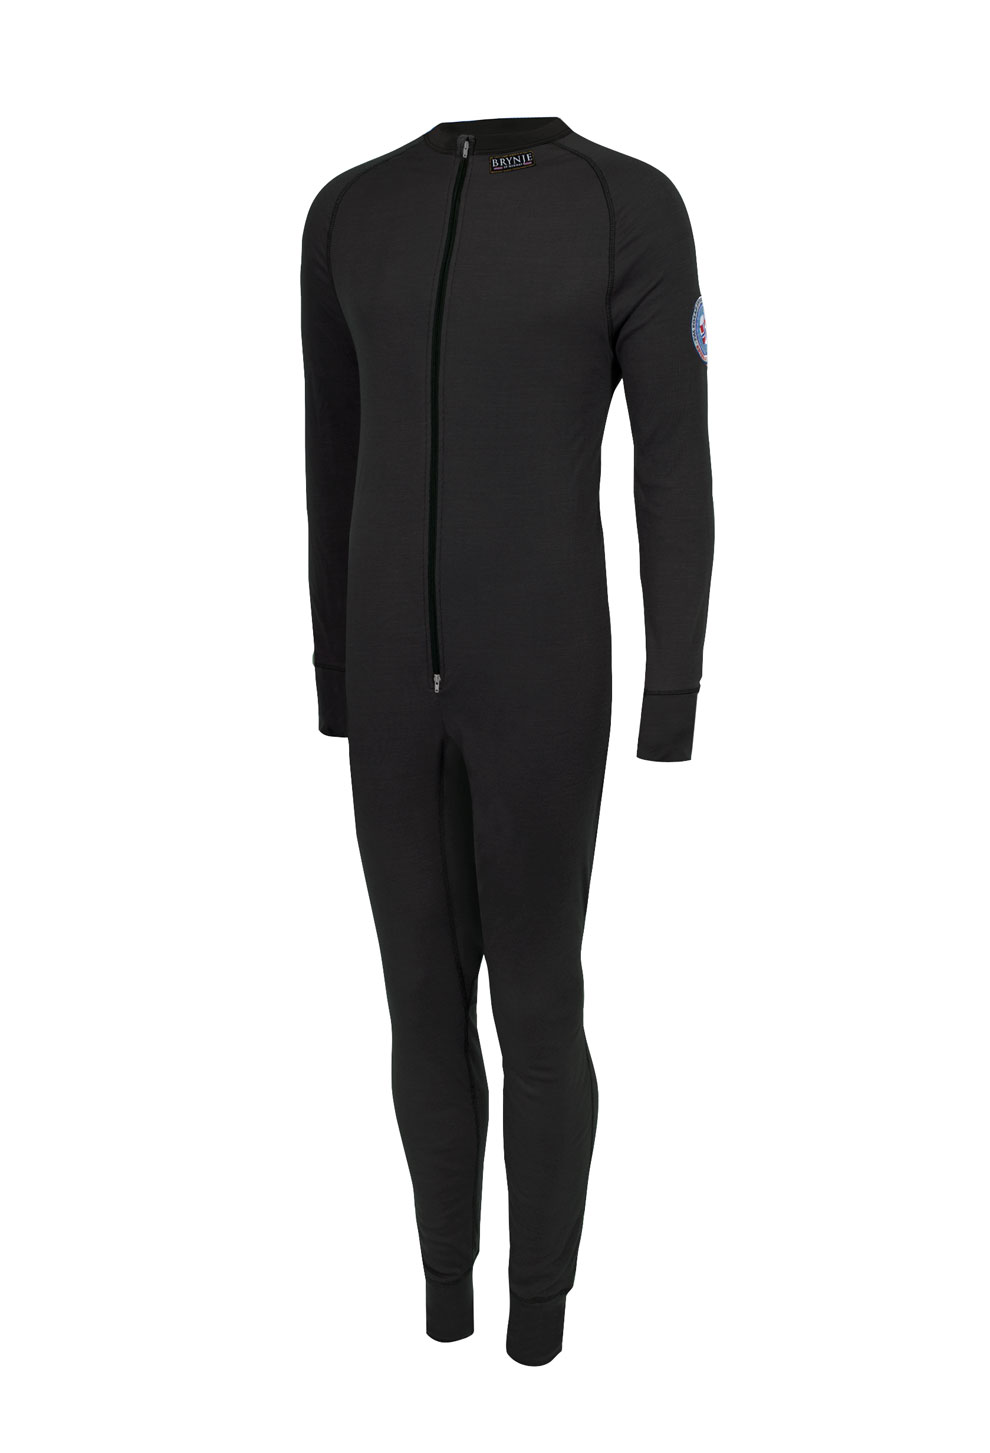 Arctic Double XC Suit roundneck singlezip med tommelgrep. Farge: SORT